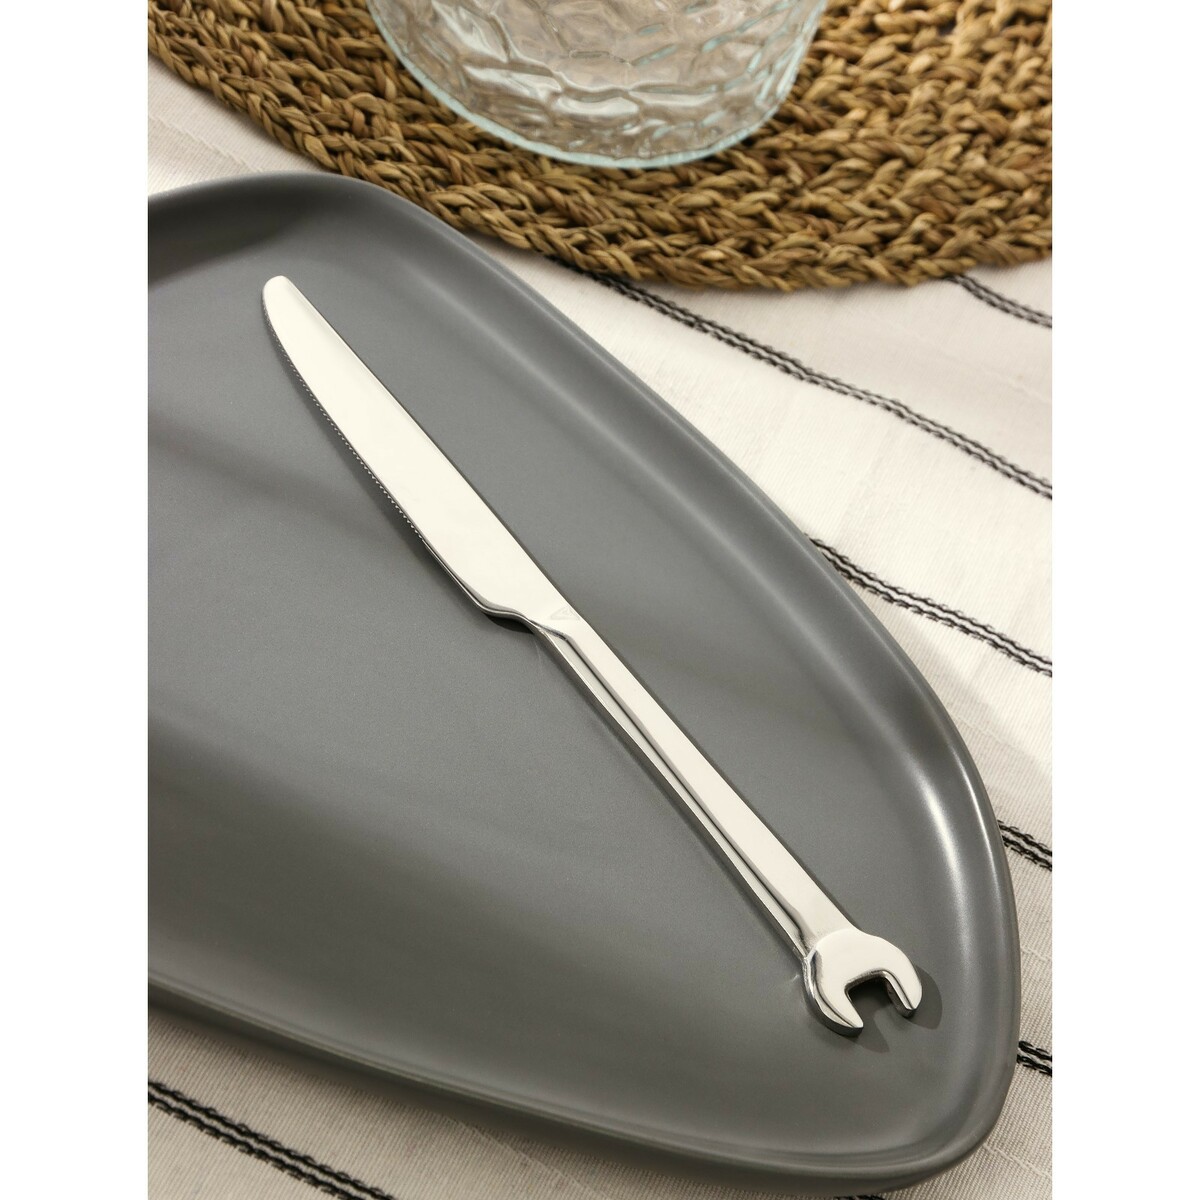 Нож столовый из нержавеющей стали magistro workshop, длина 22 см, цвет серебряный нож шеф magistro ardone лезвие 20 см